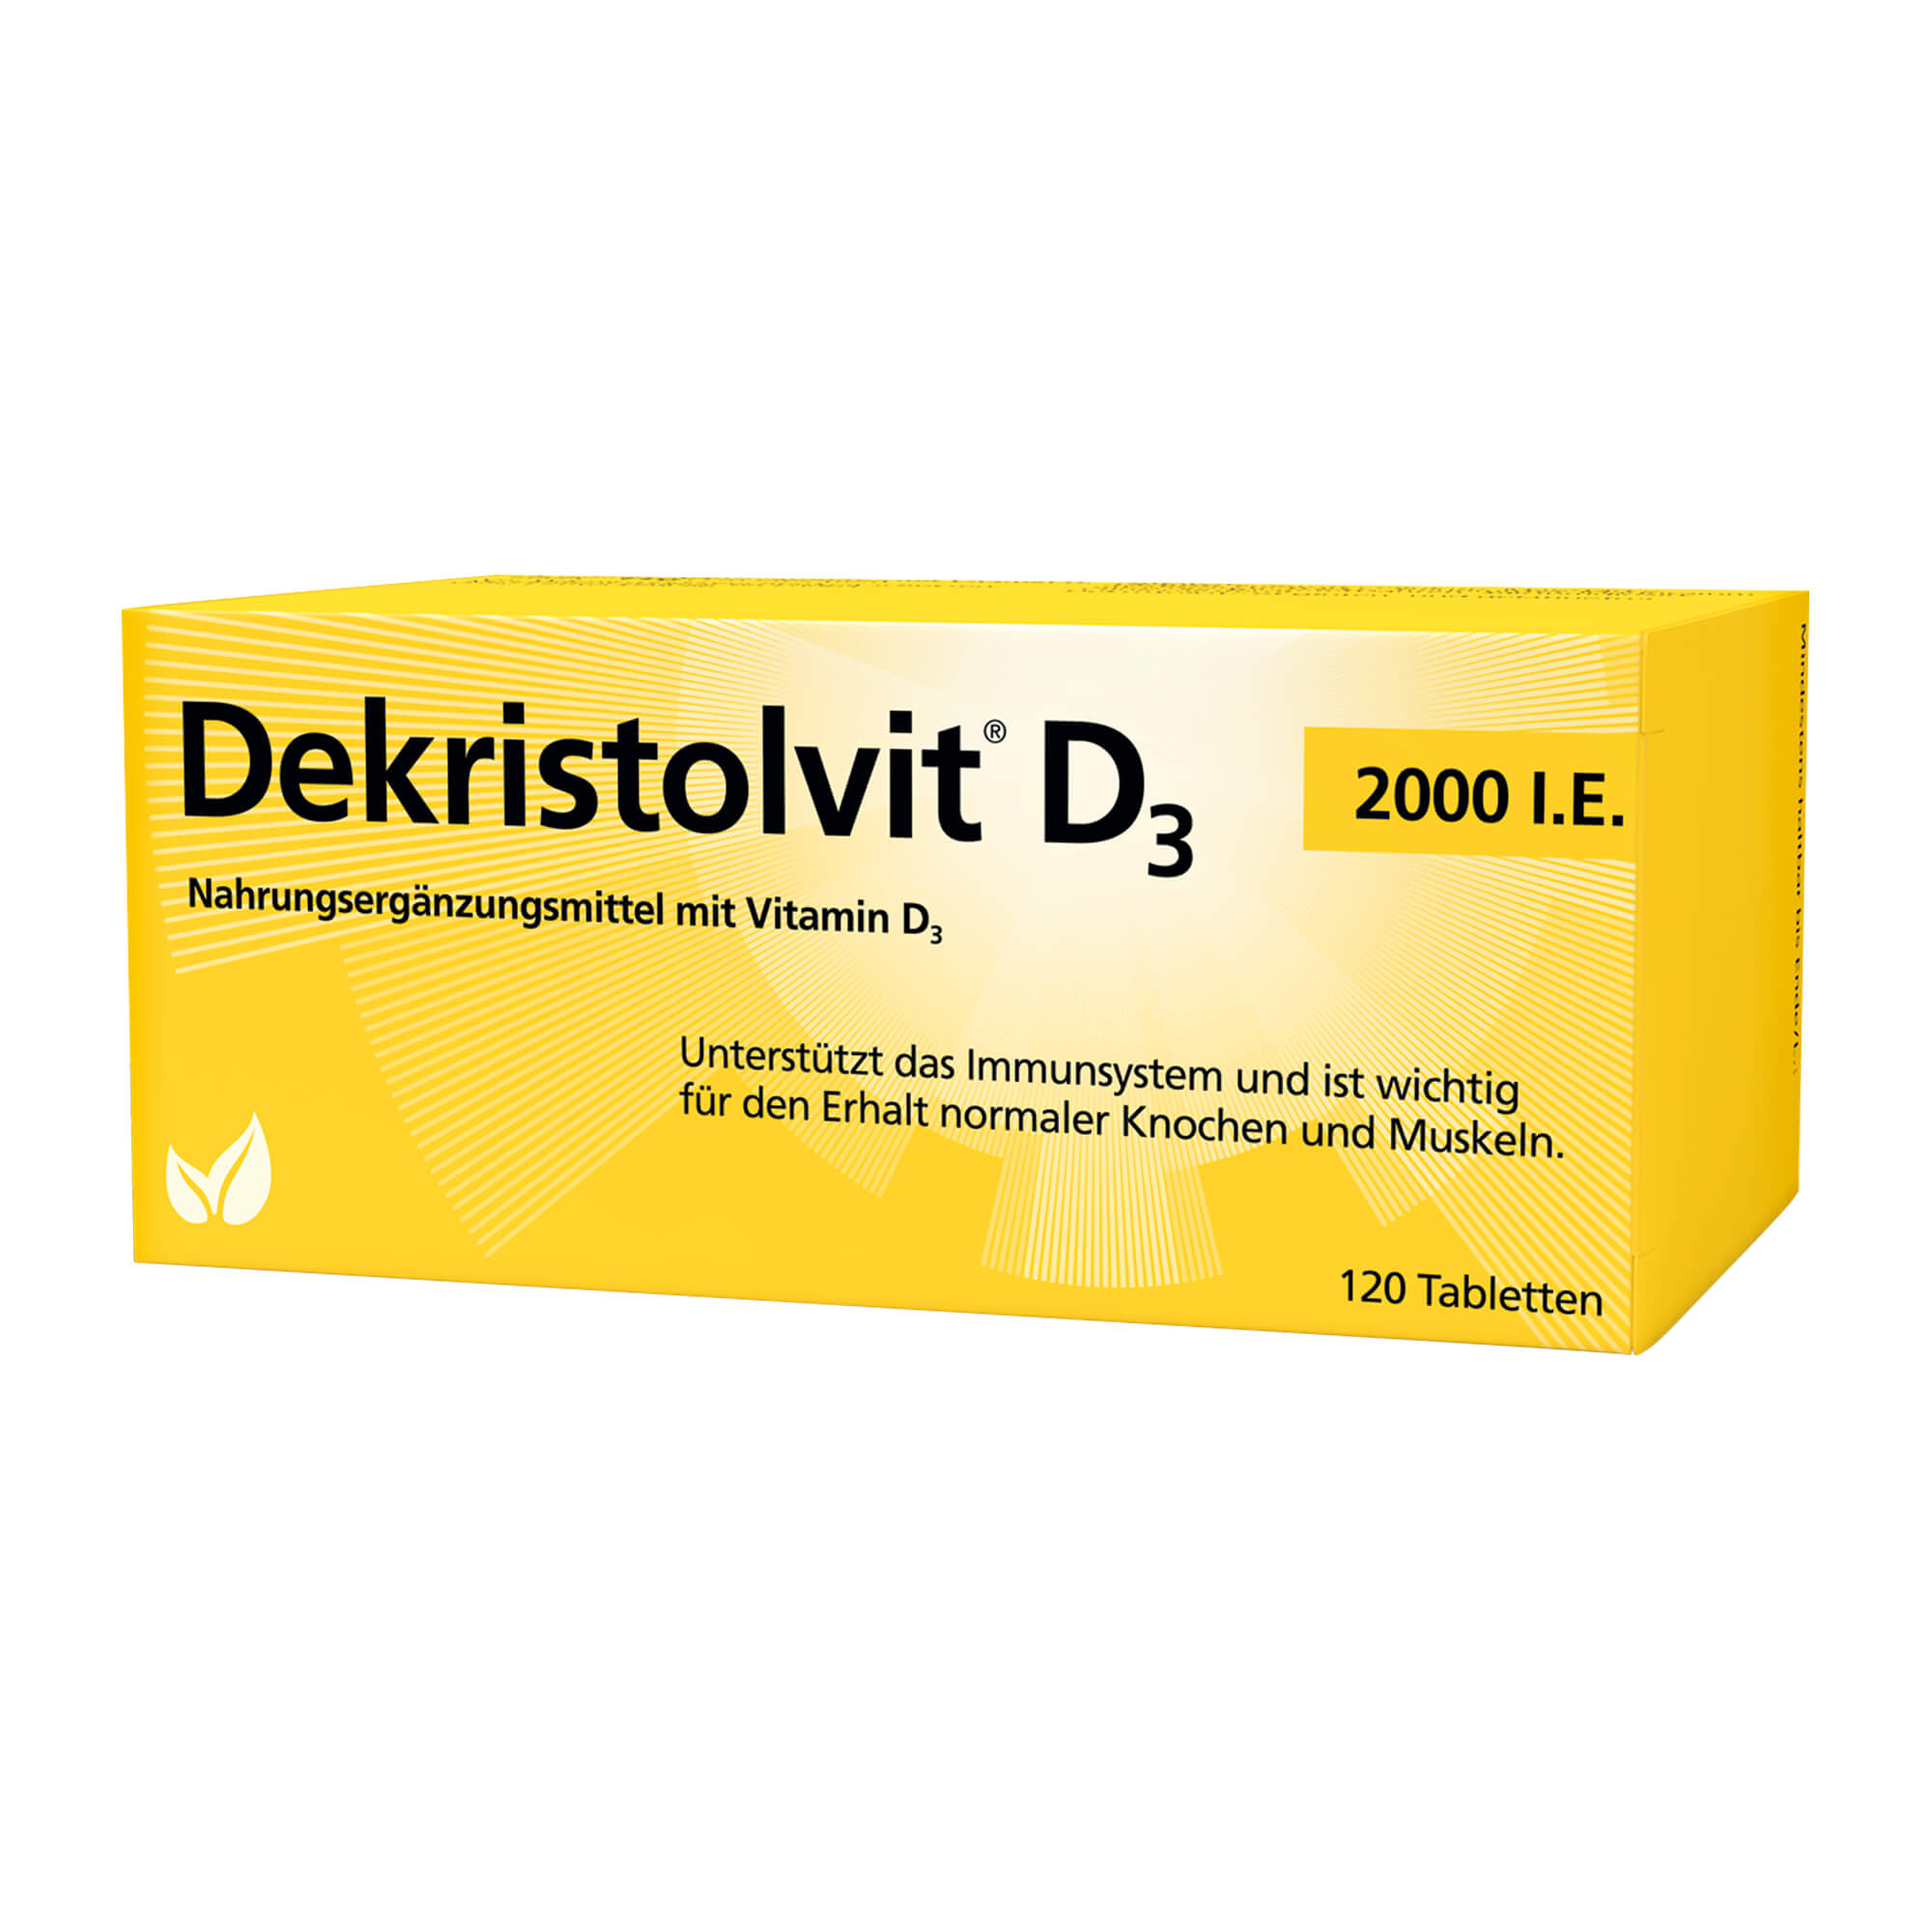 Tabletten mit Vitamin D3 für Kinder ab 11 Jahren zur täglichen Einnahme.